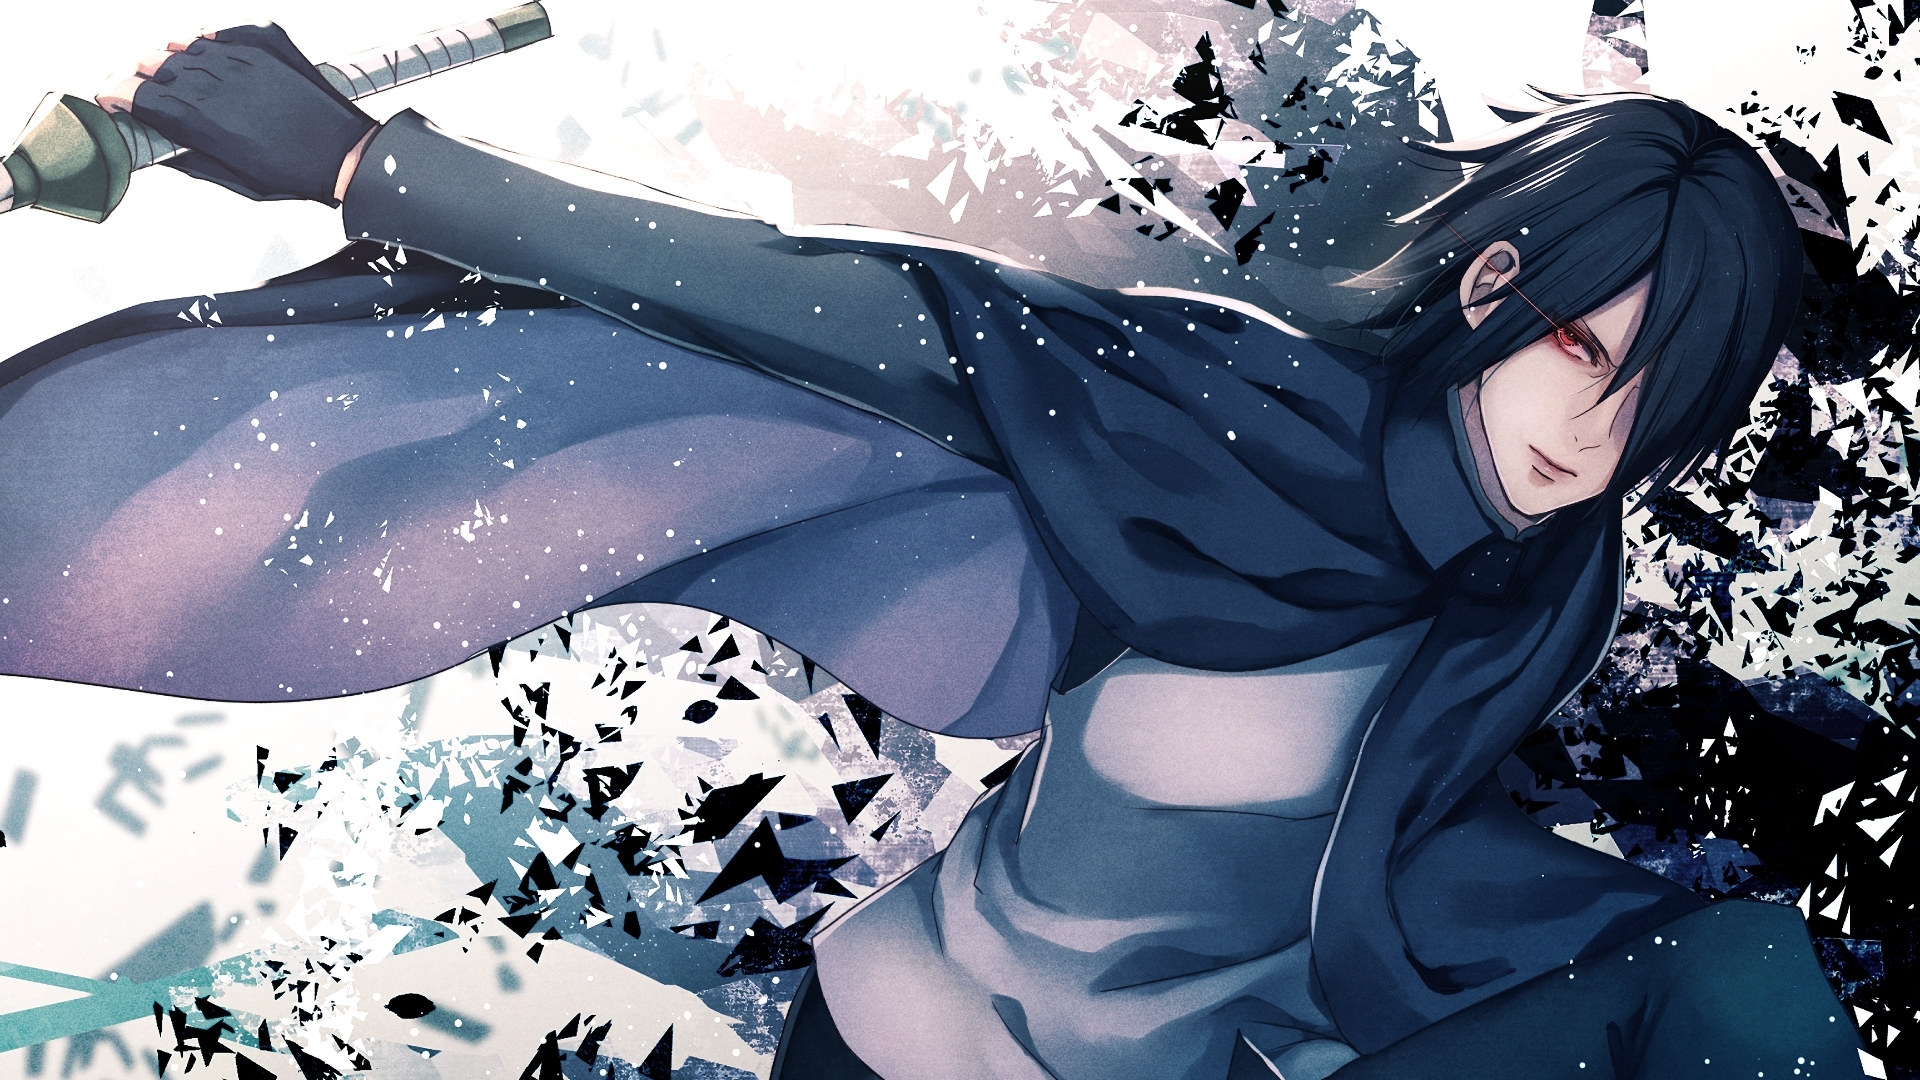 sasuke wallpaper hd,capelli neri,cg artwork,anime,cartone animato,illustrazione